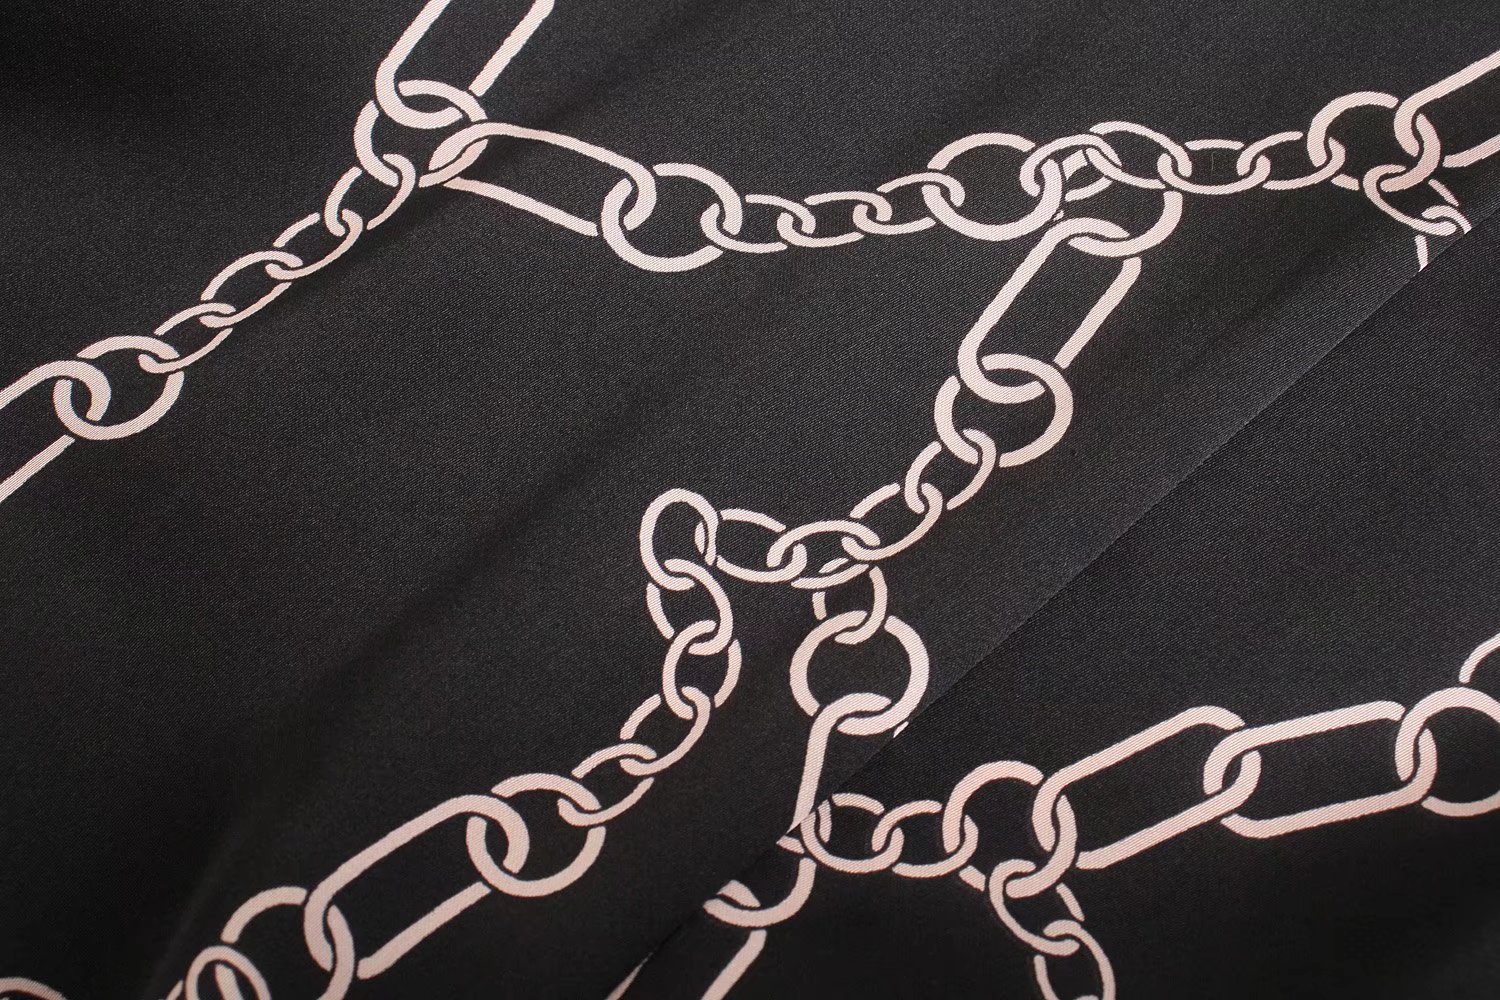 Street Women V-neck Chain Printed Long-Sleeved Dress in Dresses